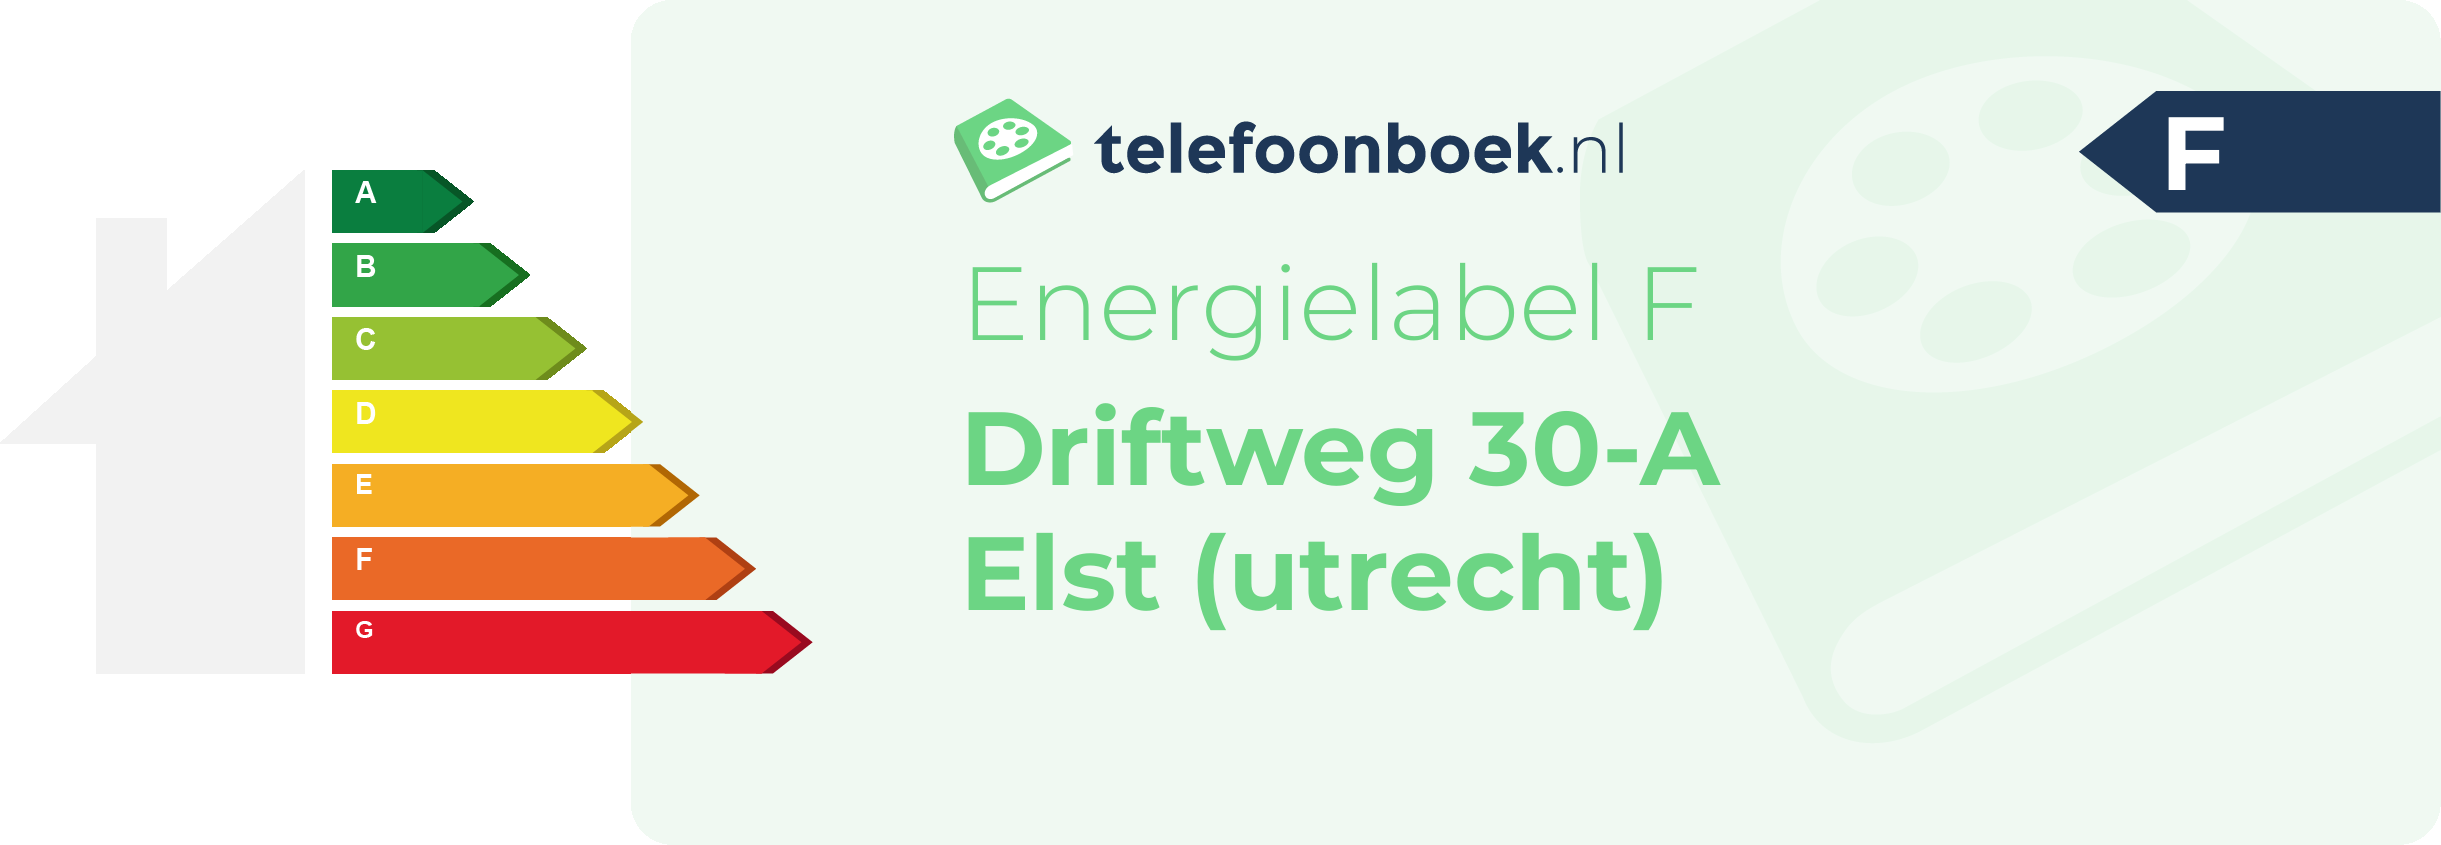 Energielabel Driftweg 30-A Elst (Utrecht)